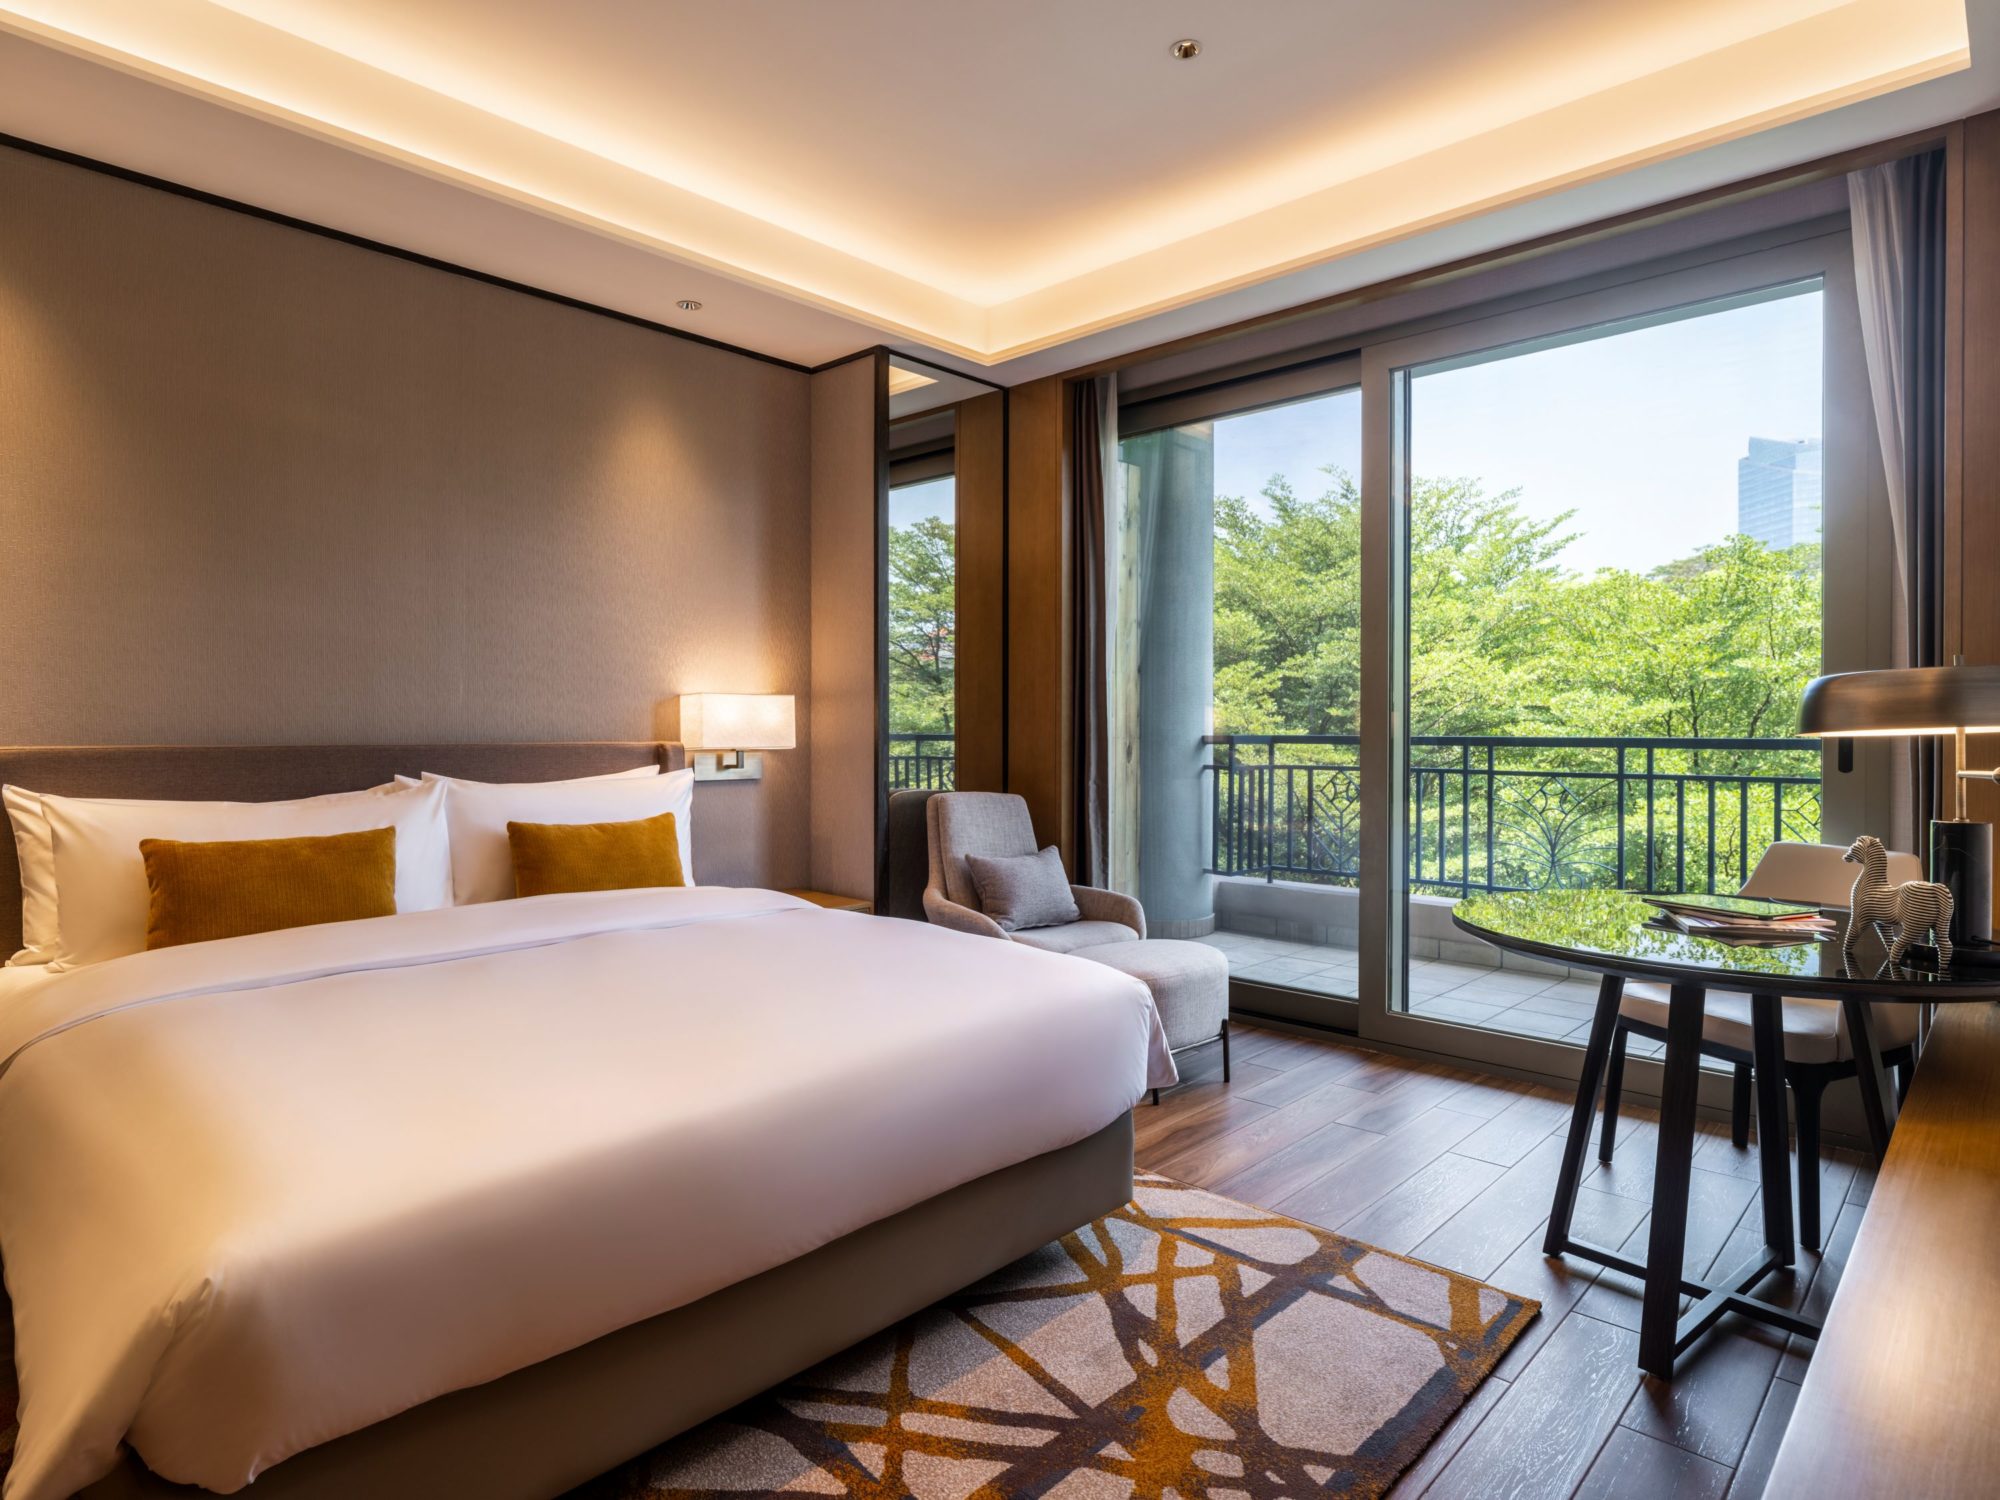 Pullman Living Dongguan Forum – Two Bedroom